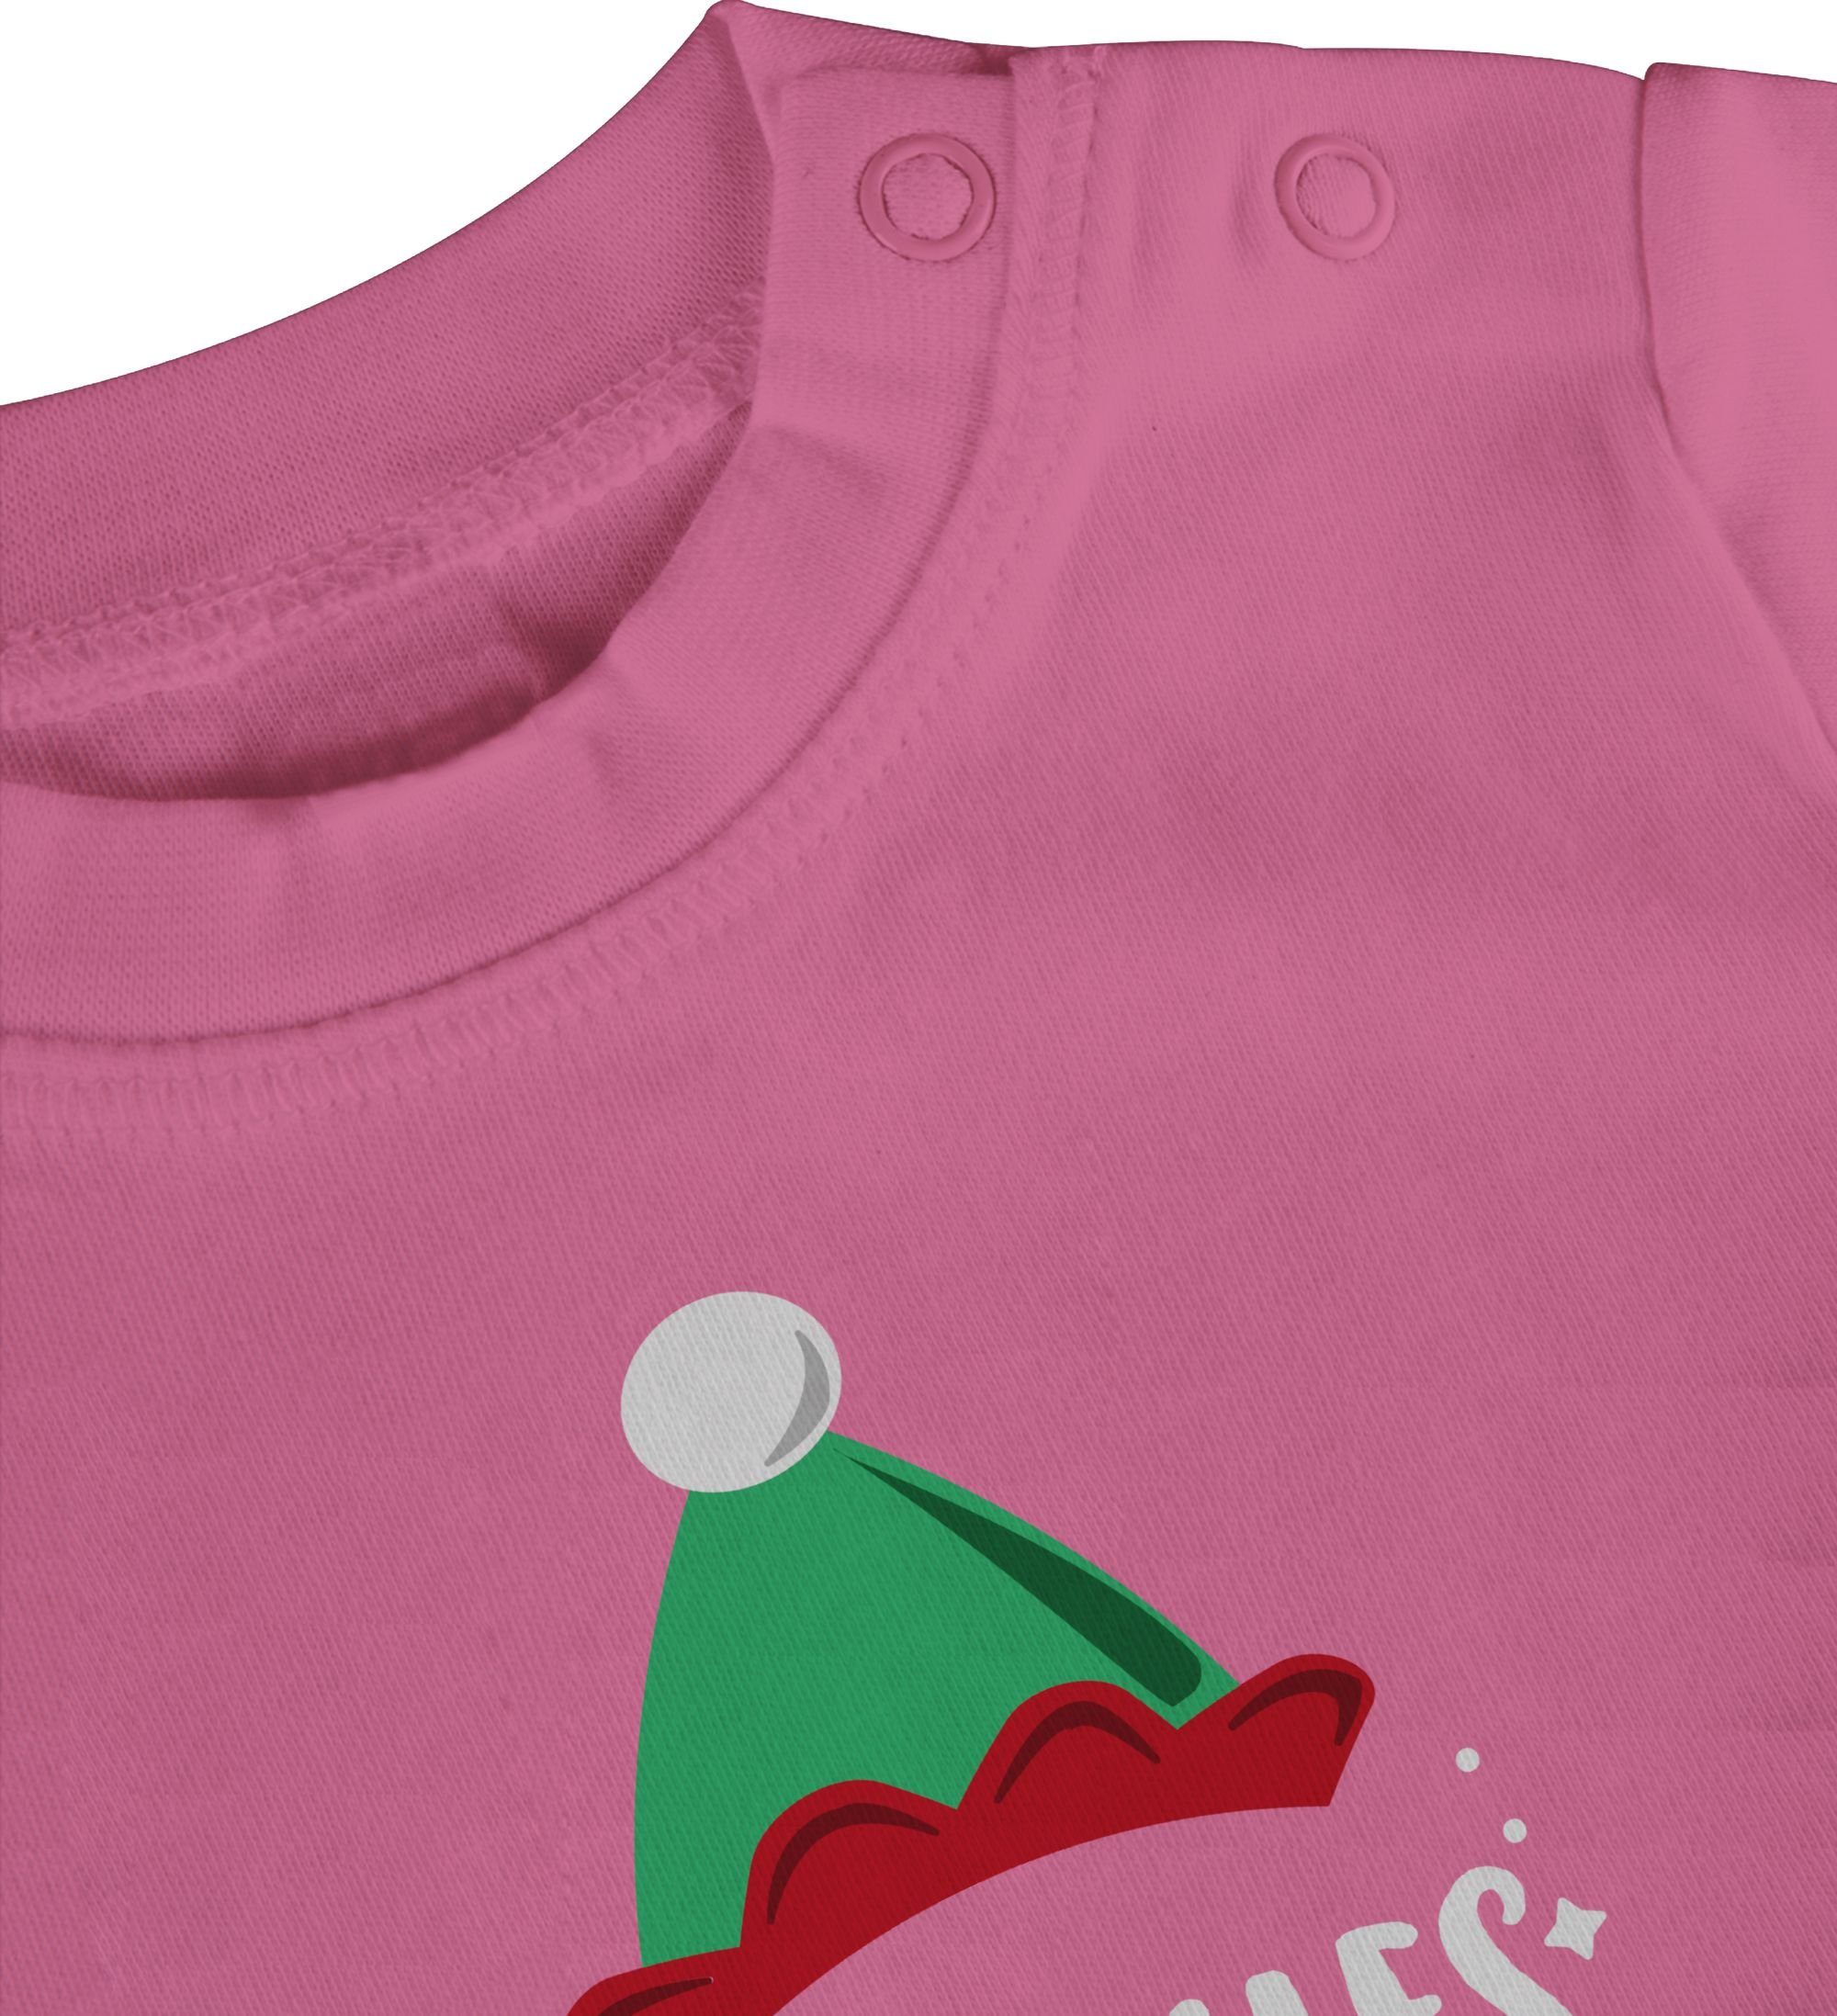 Shirtracer Weihnachten Aushilfs-Elf Weihnachten T-Shirt Pink Kleidung 1 Baby